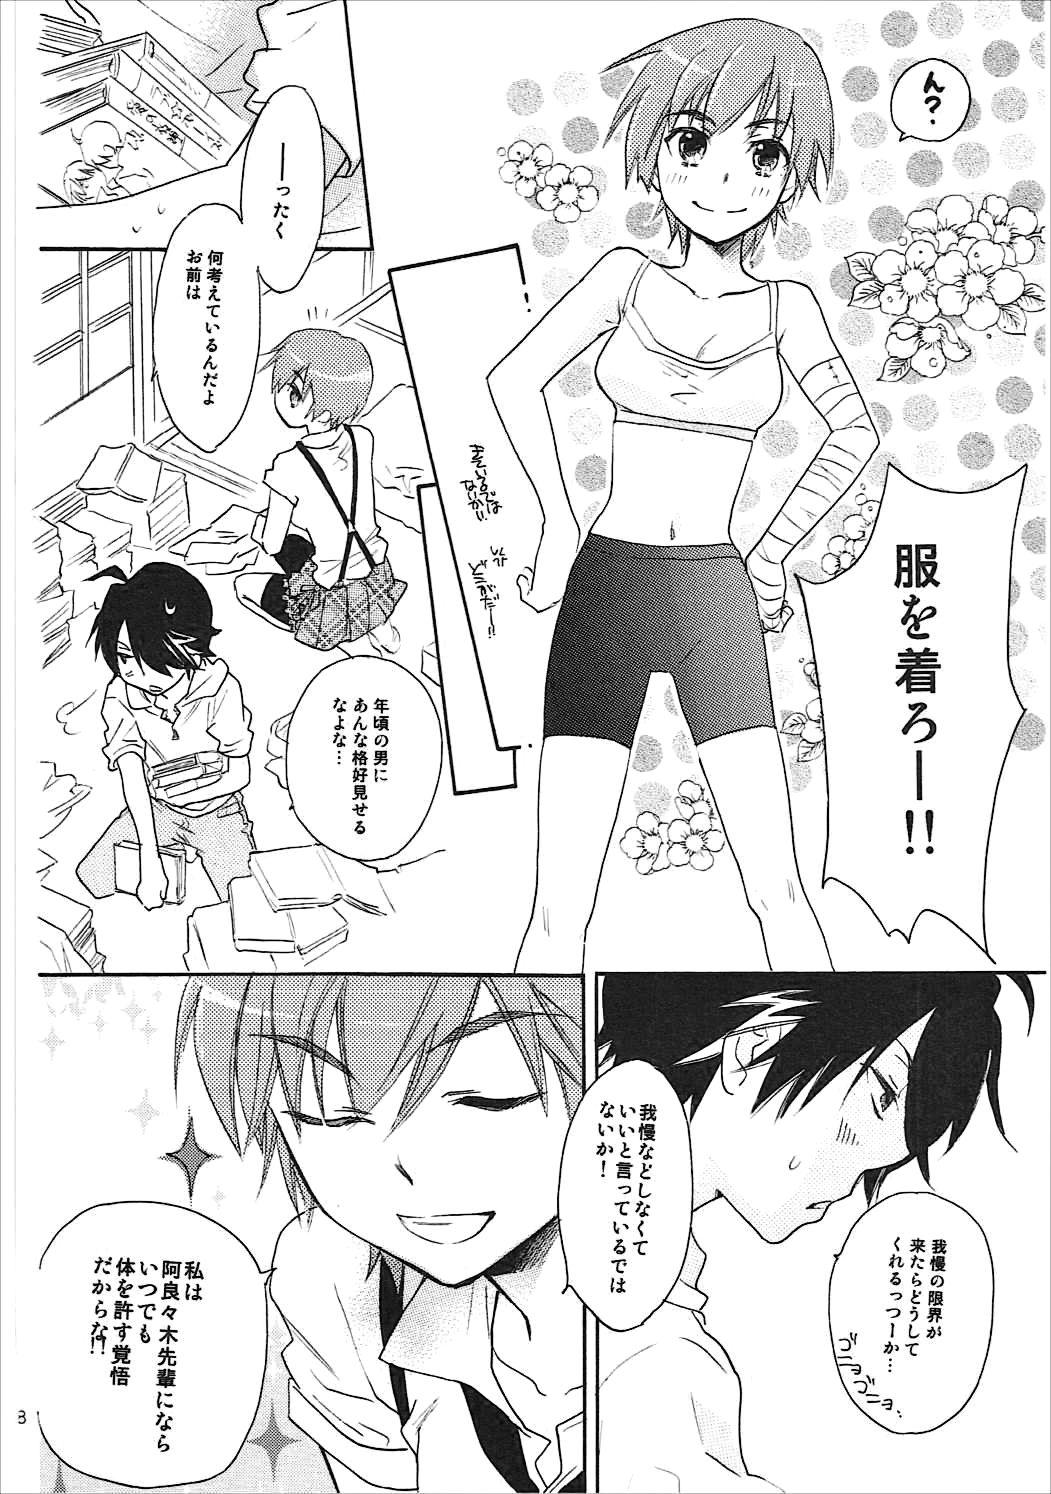 Lesbians Kanbaru Matome - reprint ABLISS 02 FLOWER - Bakemonogatari Sexteen - Page 7